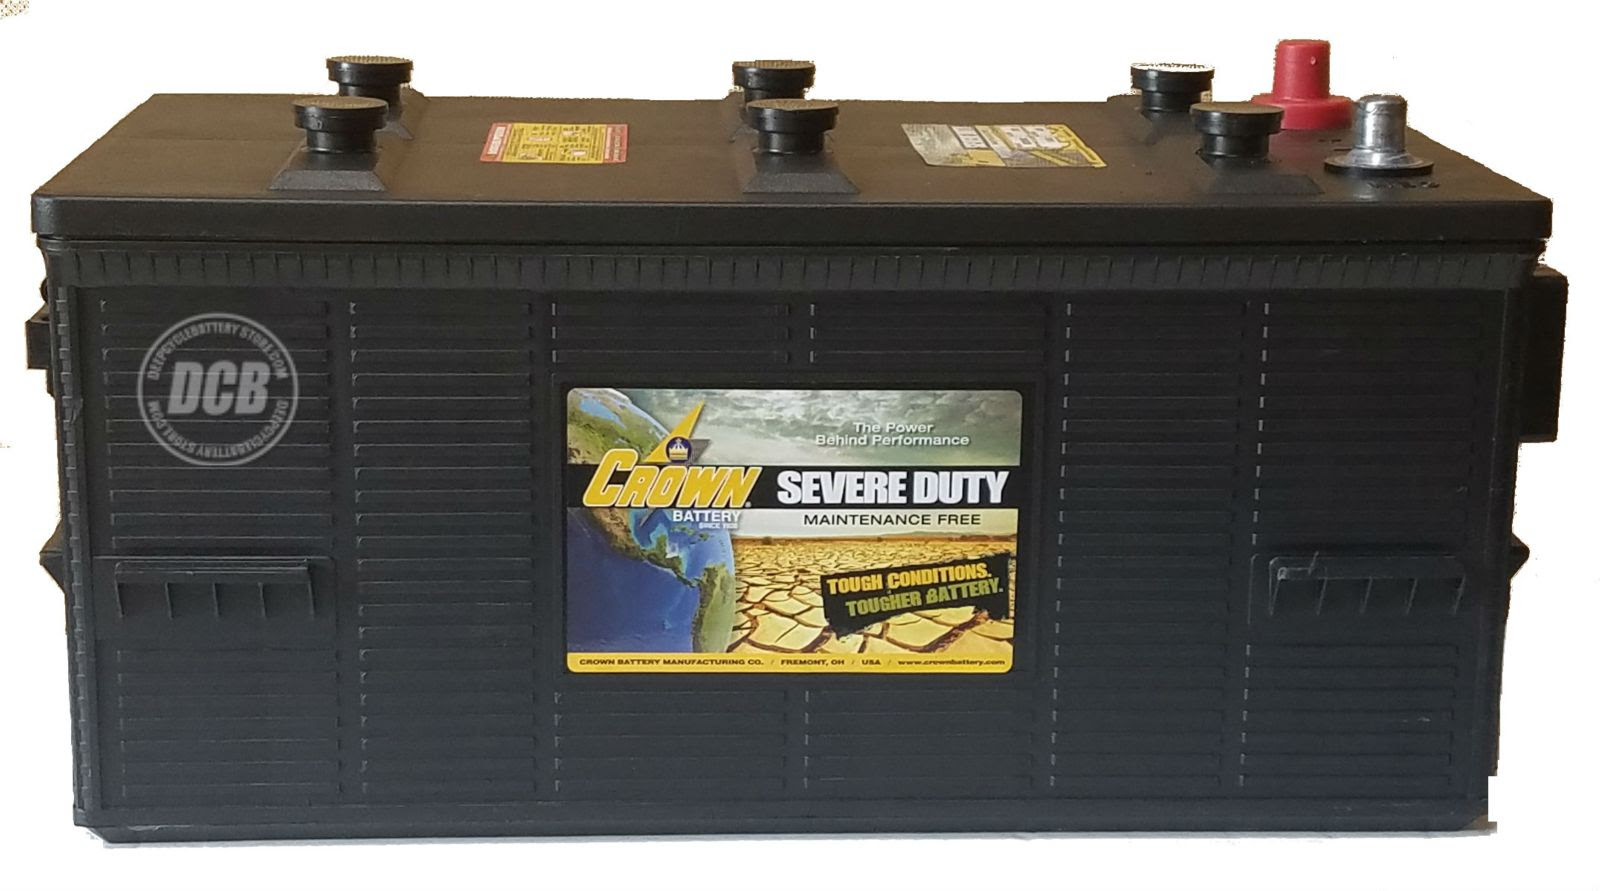 Crown Severe Duty Battery